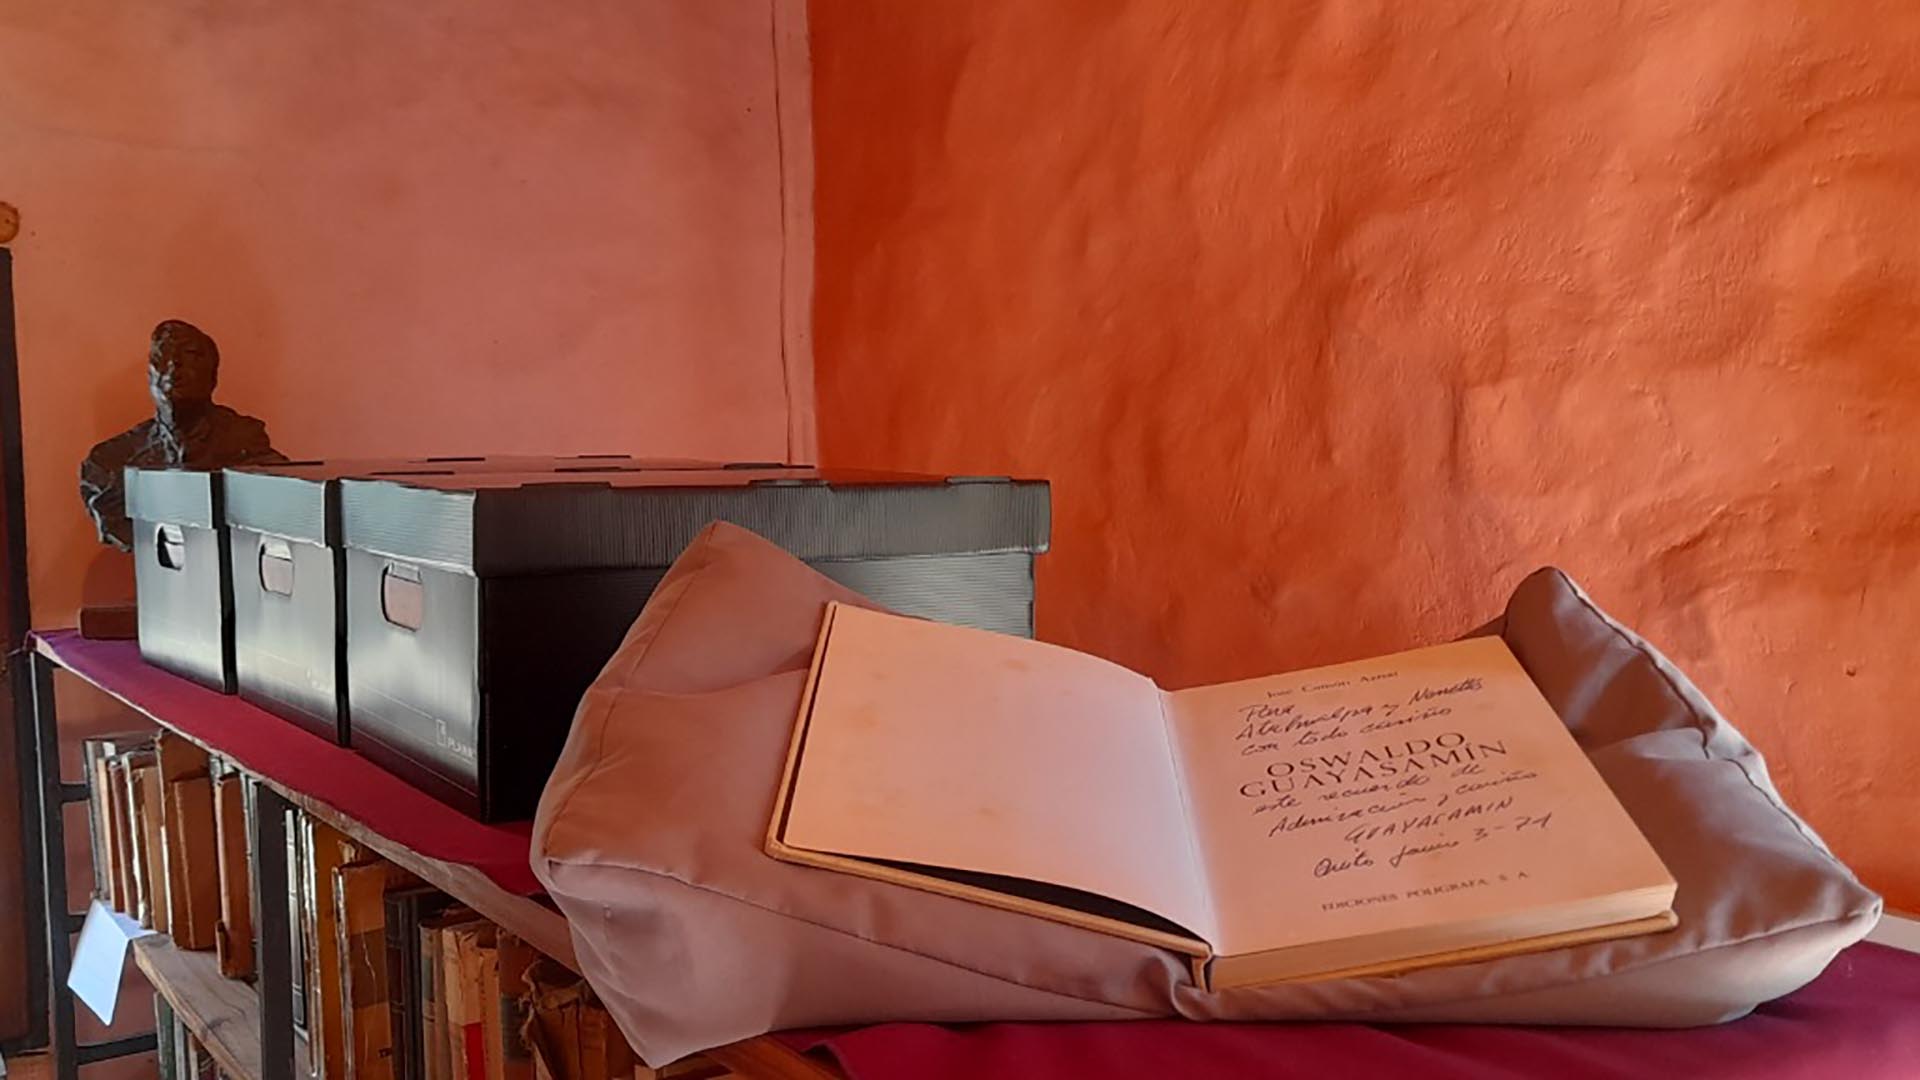 El catálogo online permite acceder a las imágenes y transcripciones de más de 300 dedicatorias cosechadas en los libros que acompañaron la vida de Atahualpa Yupanqui